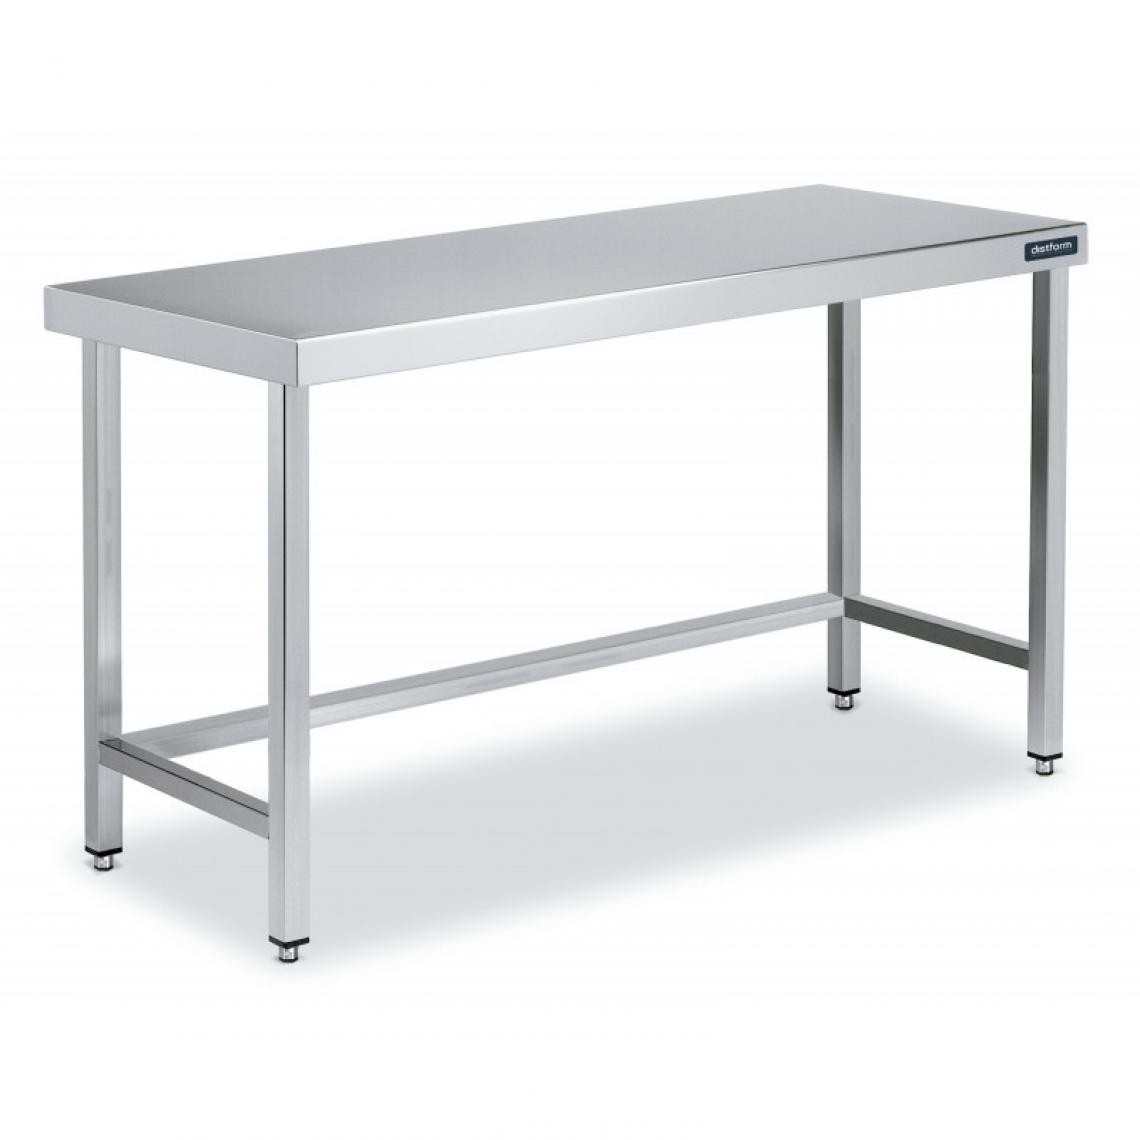 DISTFORM - Table Centrale en Inox avec renforts Profondeur 600mm - Distform - Acier inoxydable600x600 - Tables à manger